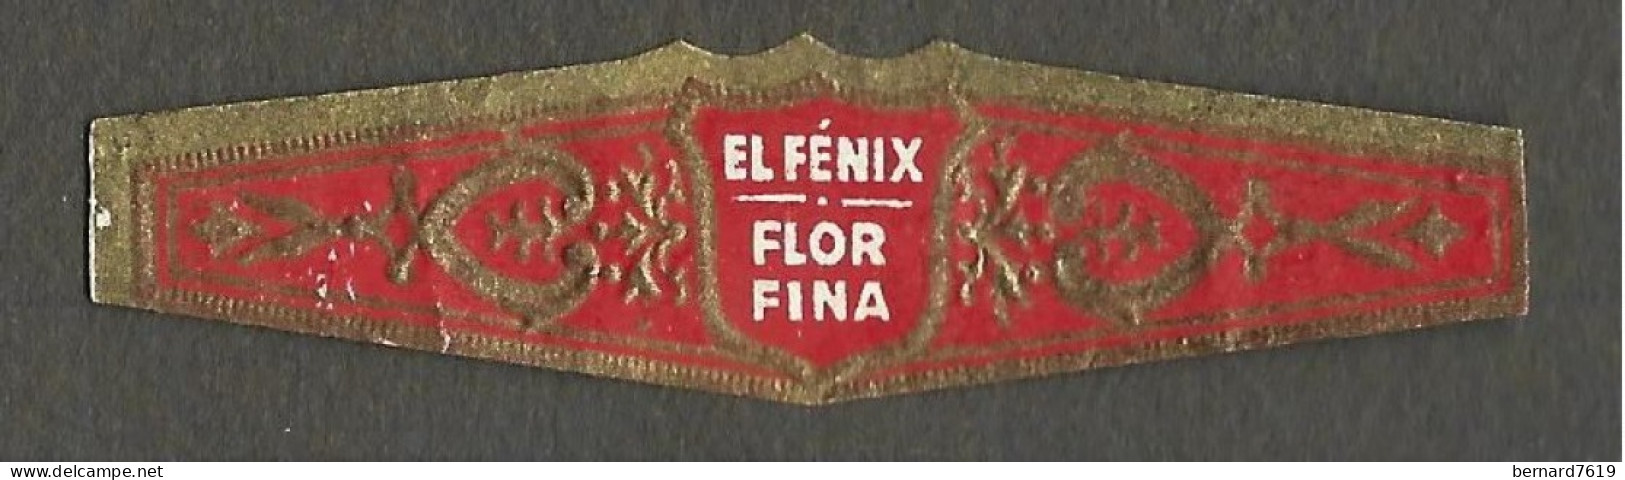 Bague De Cigare   Ancienne  1870 - 1920 - France  - El Fenix  Flor Fina - Bagues De Cigares